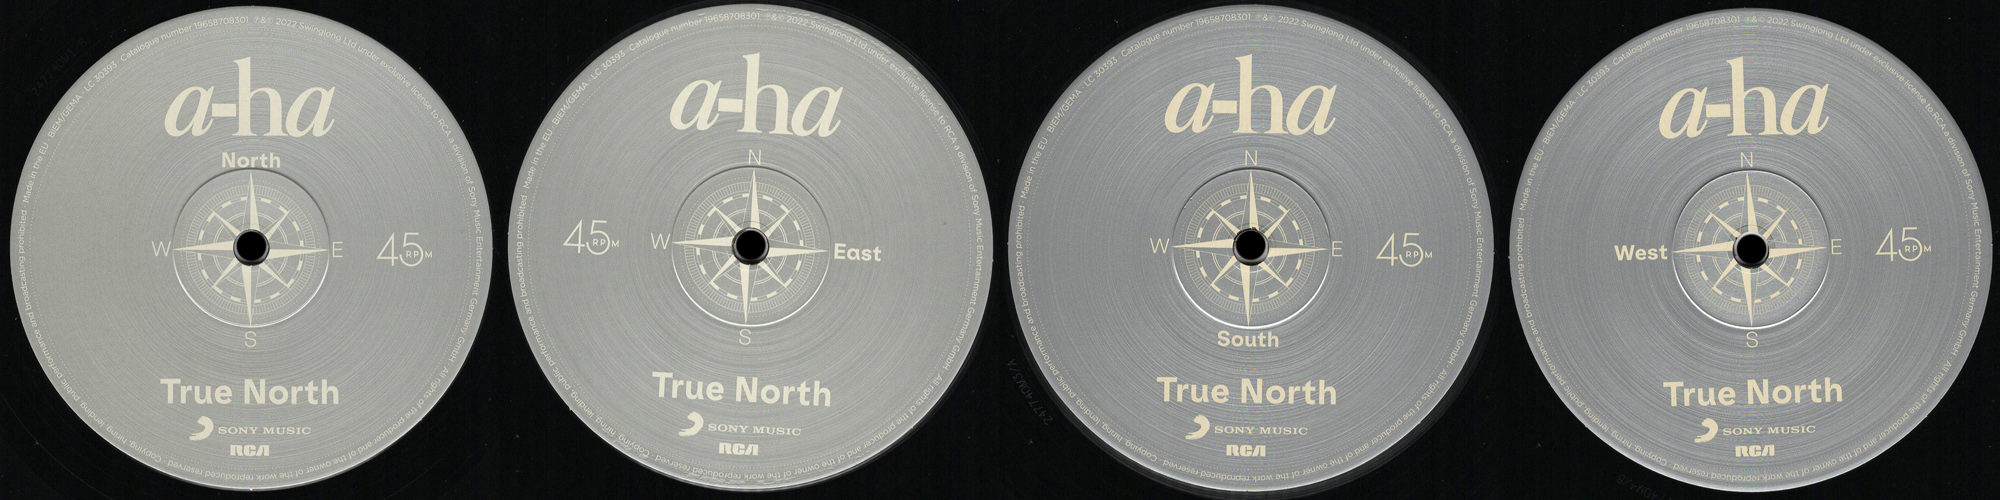 True North - LP labels